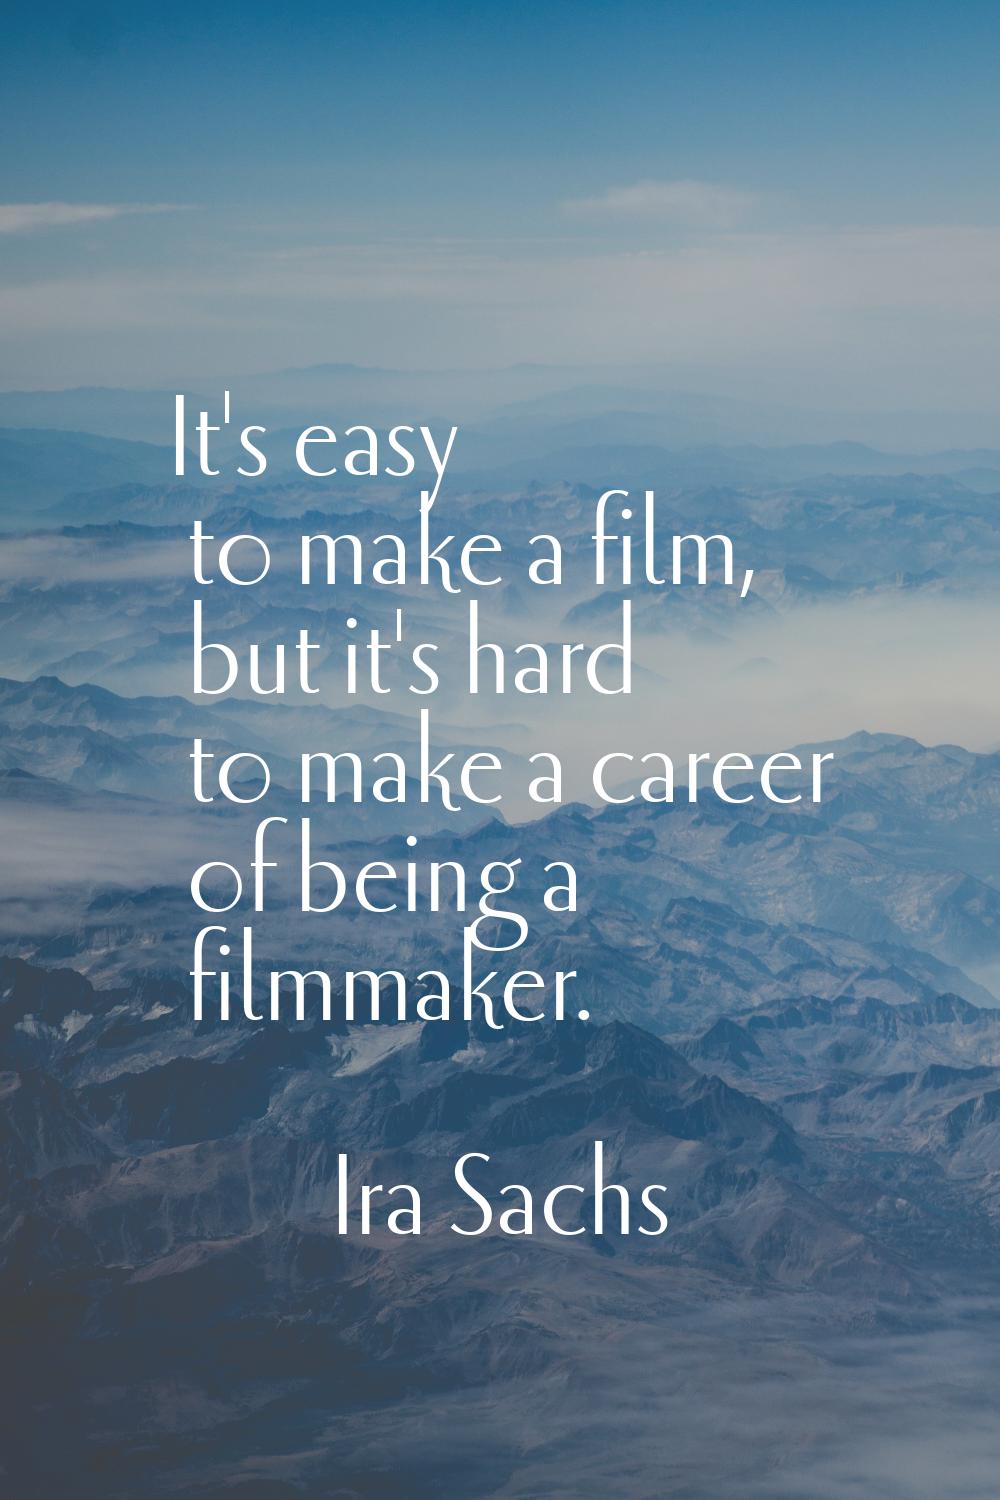 It's easy to make a film, but it's hard to make a career of being a filmmaker.